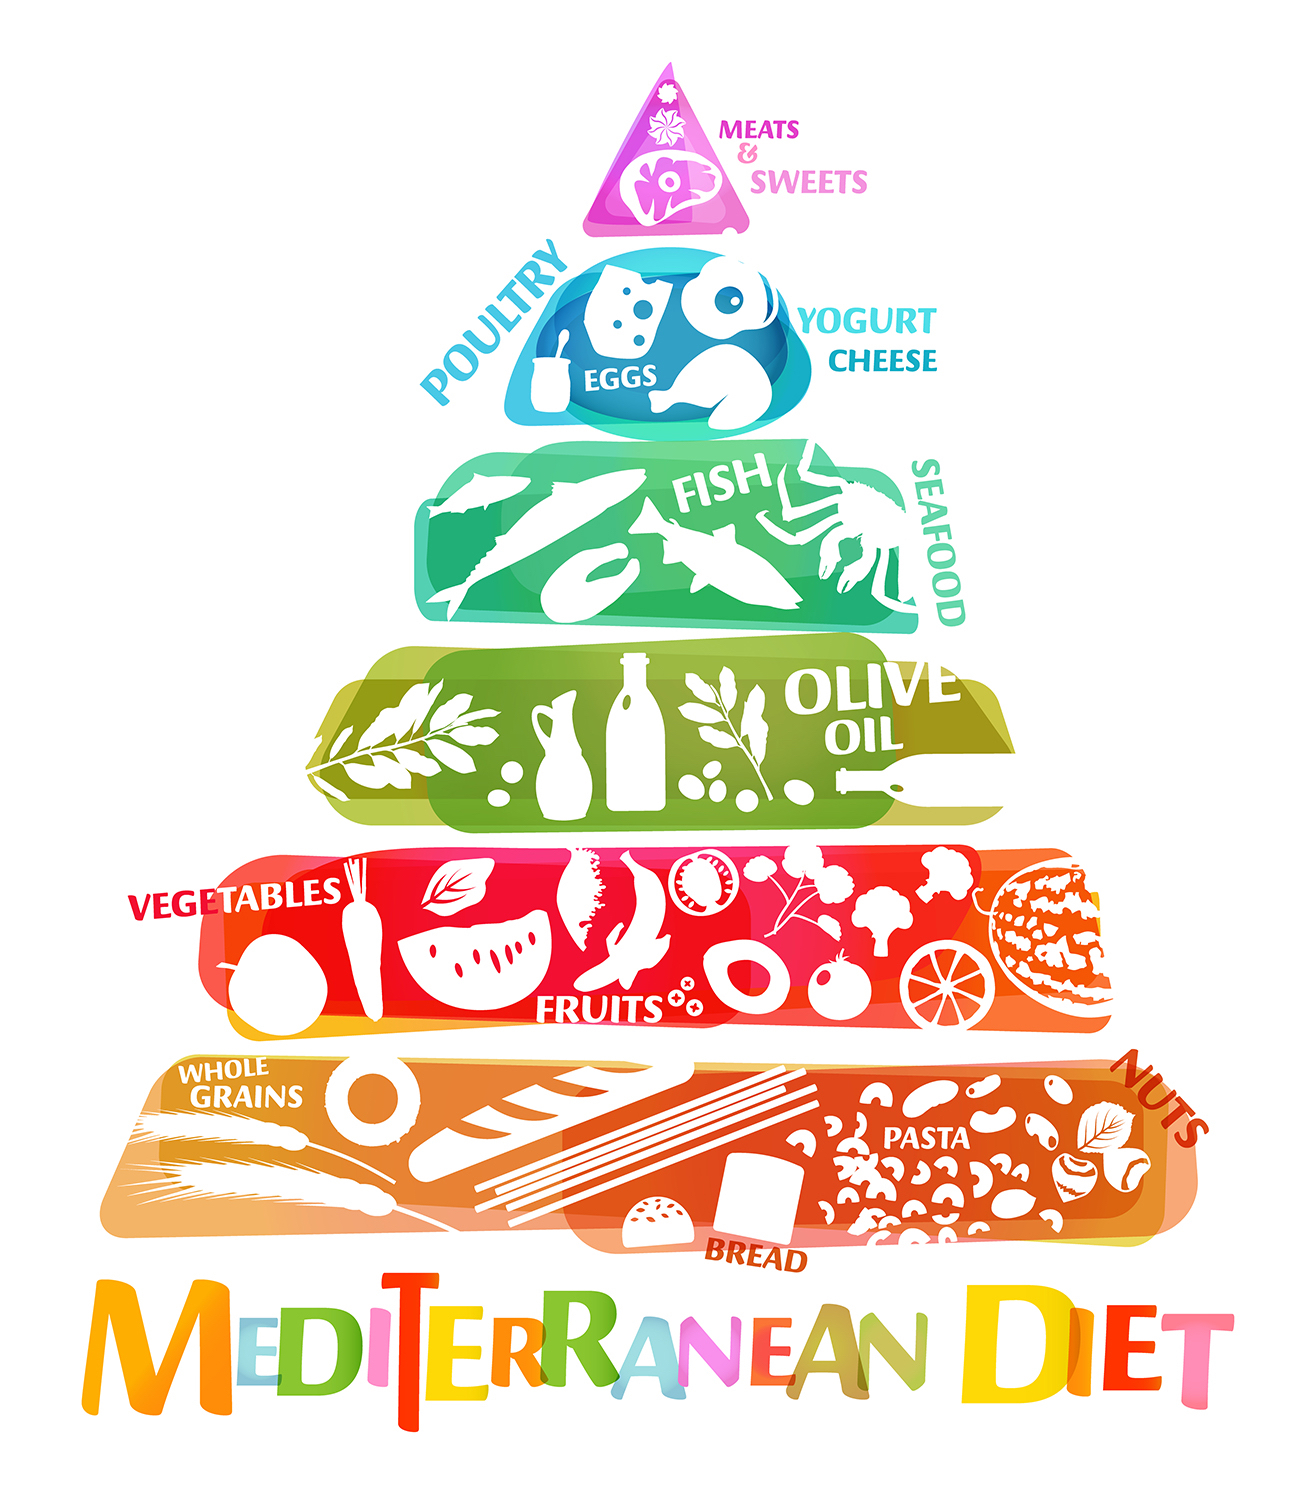 Так выглядит пищевая пирамида, которая отражает общее соотношение продуктов, рекомендованных при средиземноморской диете